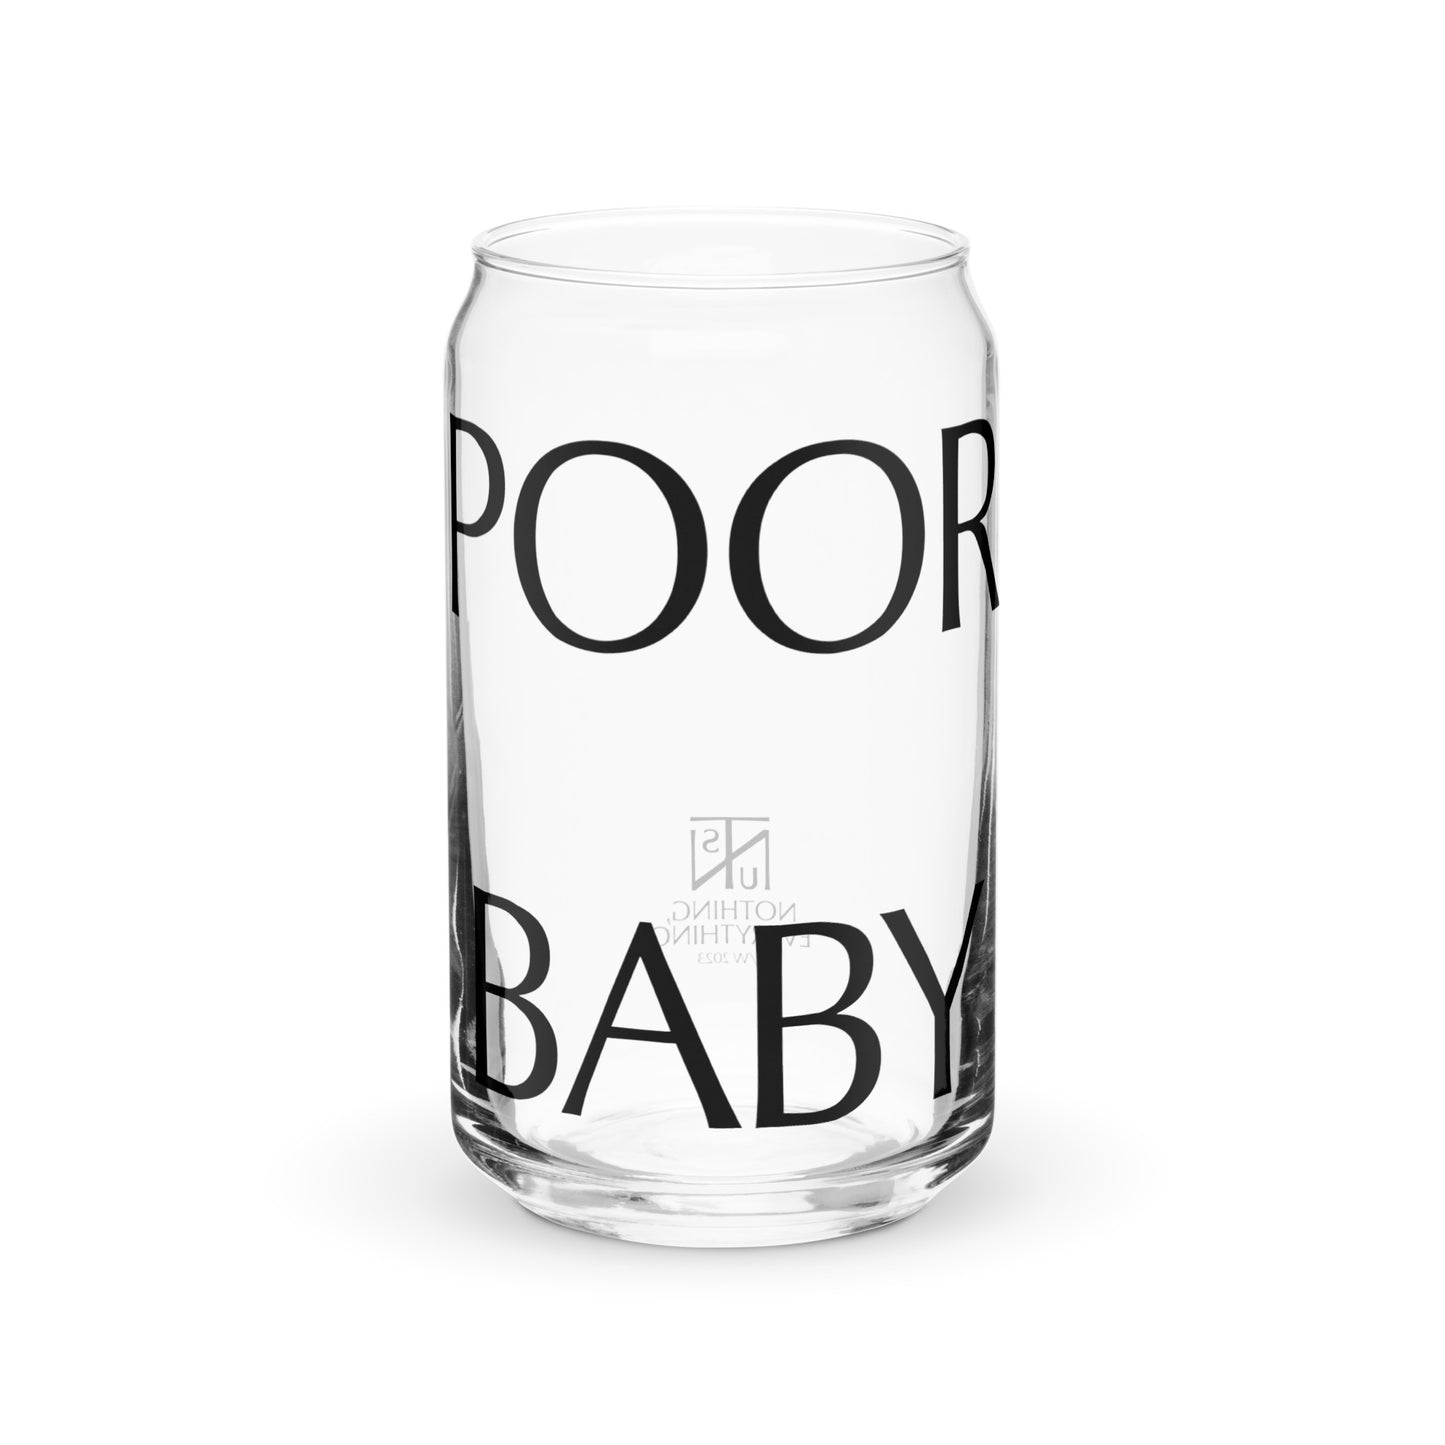 POOR BABY GLASS